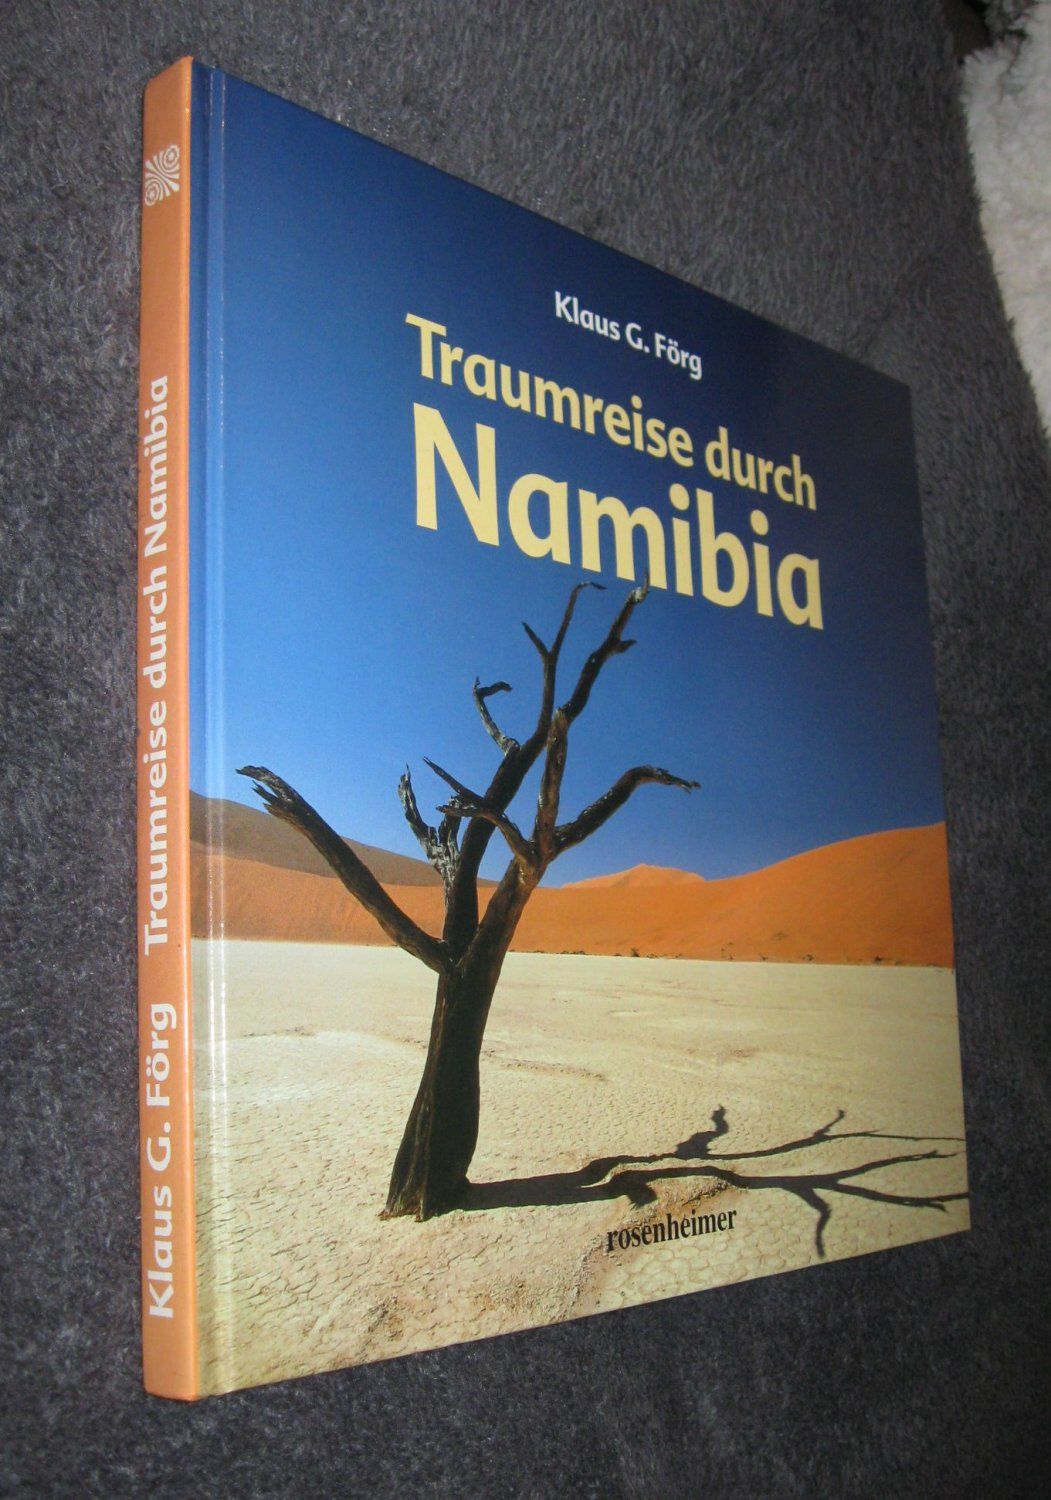 Traumreise durch Namibia. Texte von Maria Pernat  1. Auflage - Förg, Klaus G